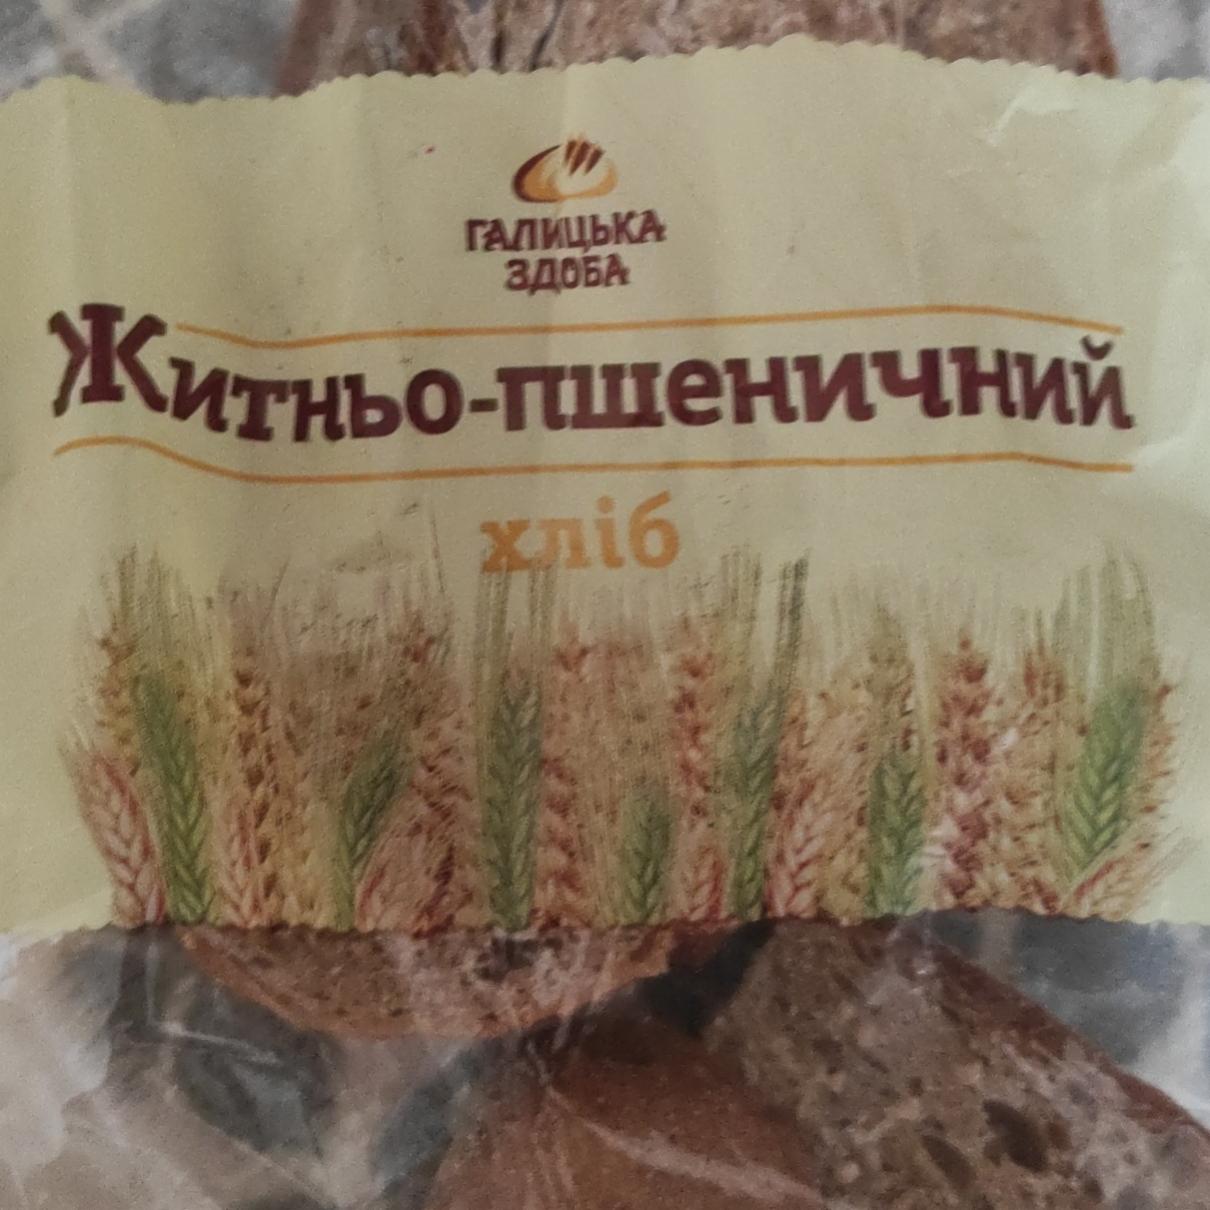 Фото - Хліб житньо-пшеничний Галицька здоба